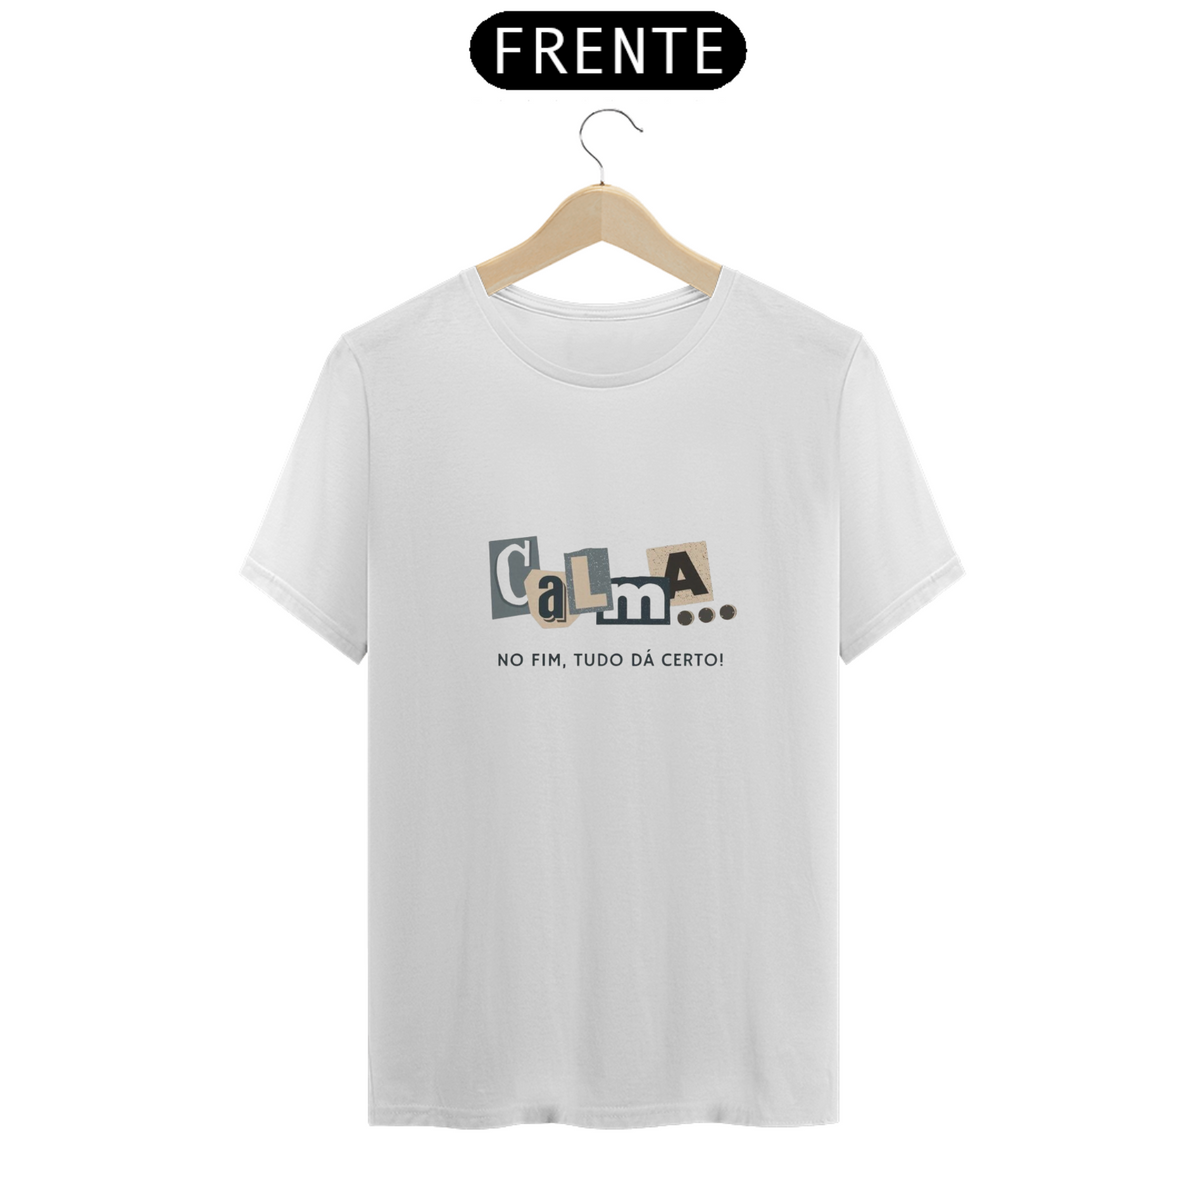 Nome do produto: Camisa T-Shirt rk14